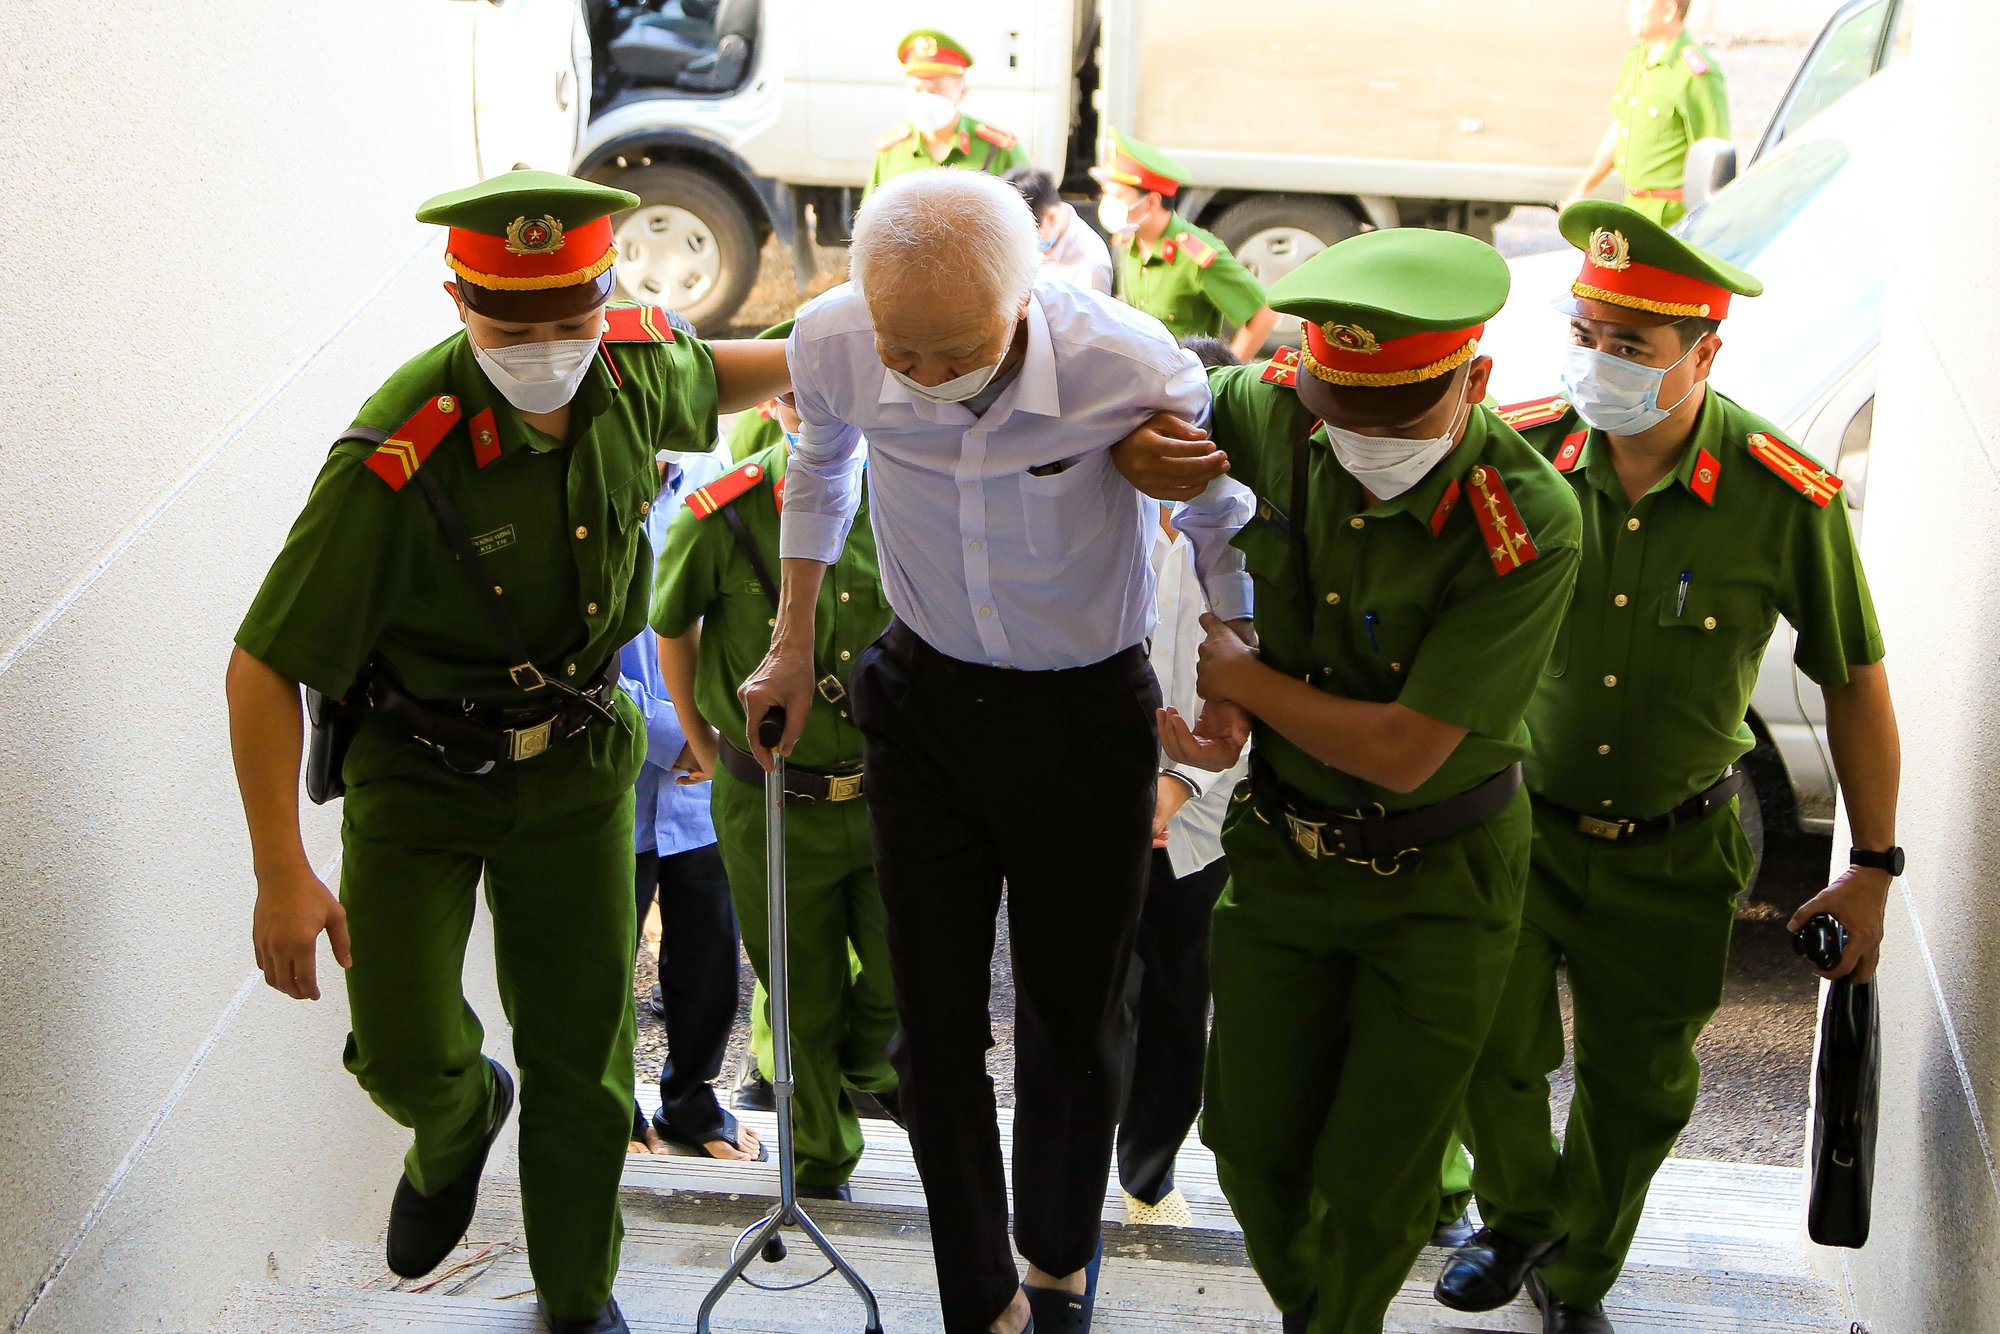 Cựu bí thư Bình Dương Trần Văn Nam cùng các đồng phạm bị dẫn giải tới tòa - Ảnh 4.